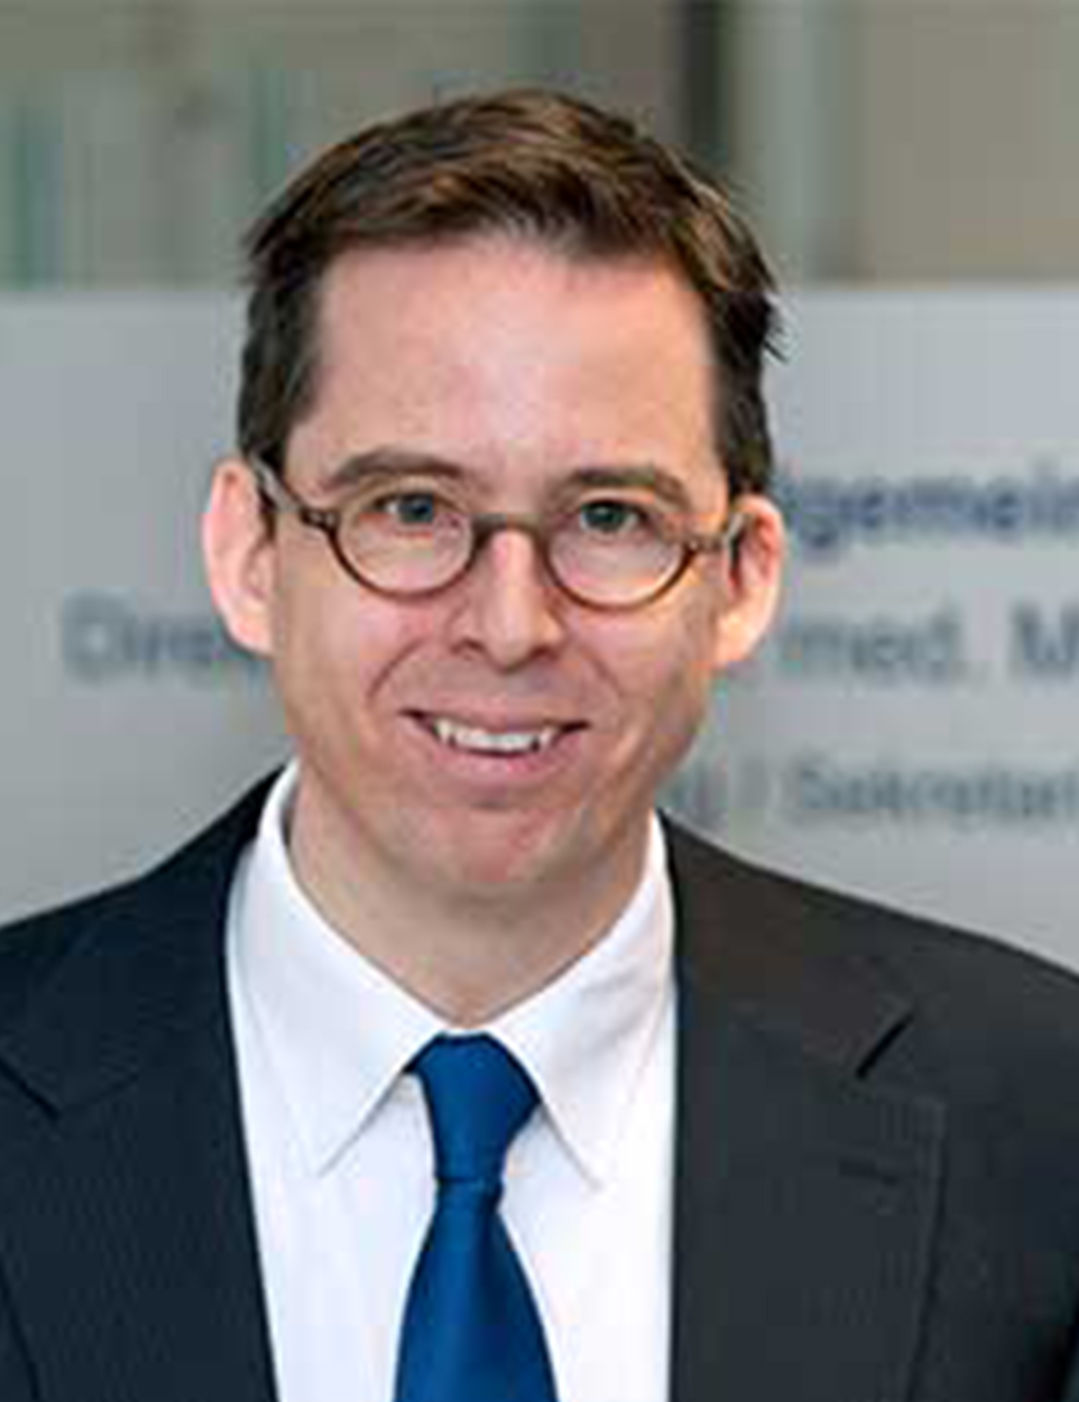 Dr. Markus Beier